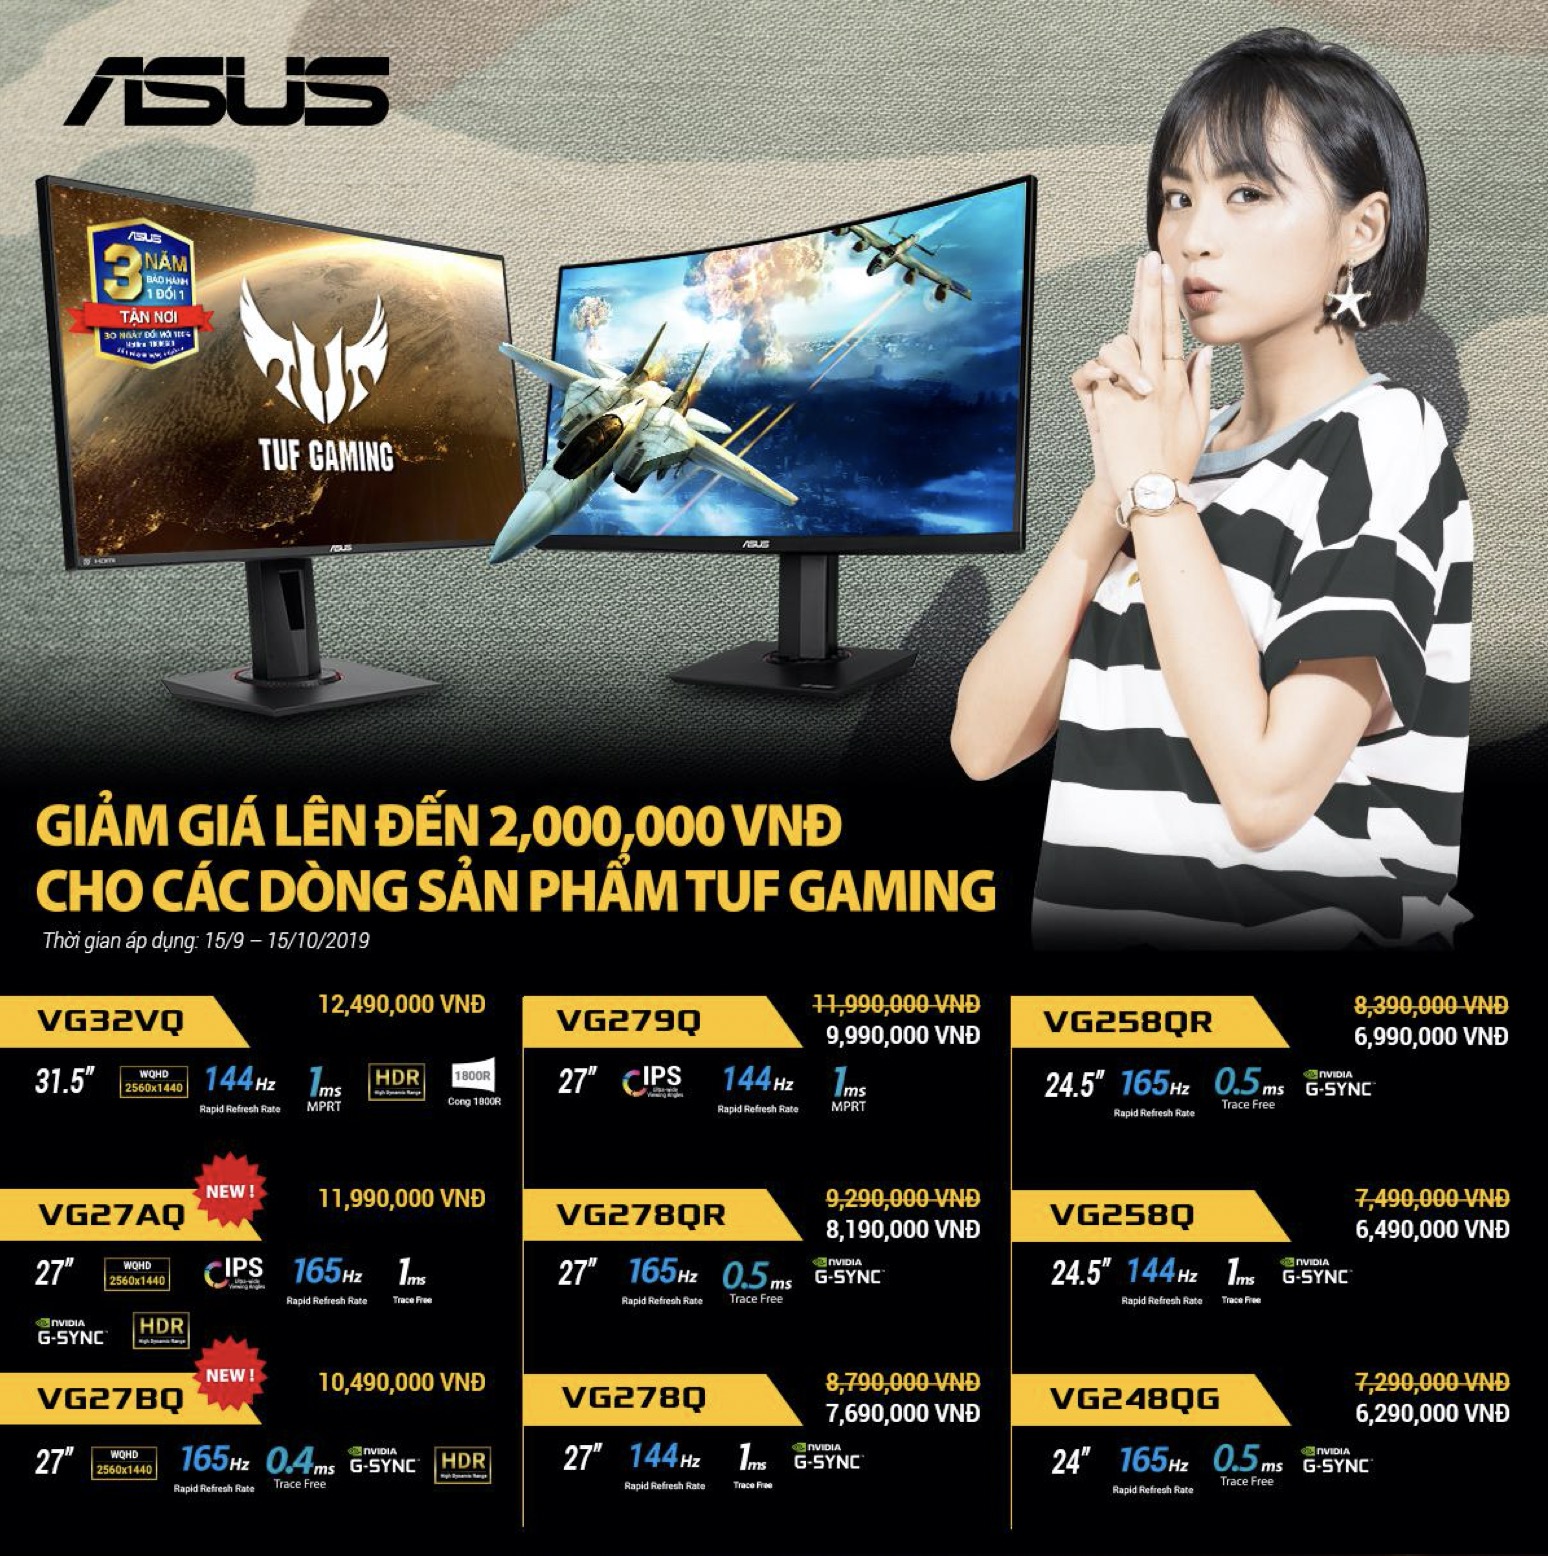 ASUS ra mắt dòng sản phẩm màn hình chơi game TUF mới VG32VQ, VG27AQ và VG27BQ tại Việt Nam